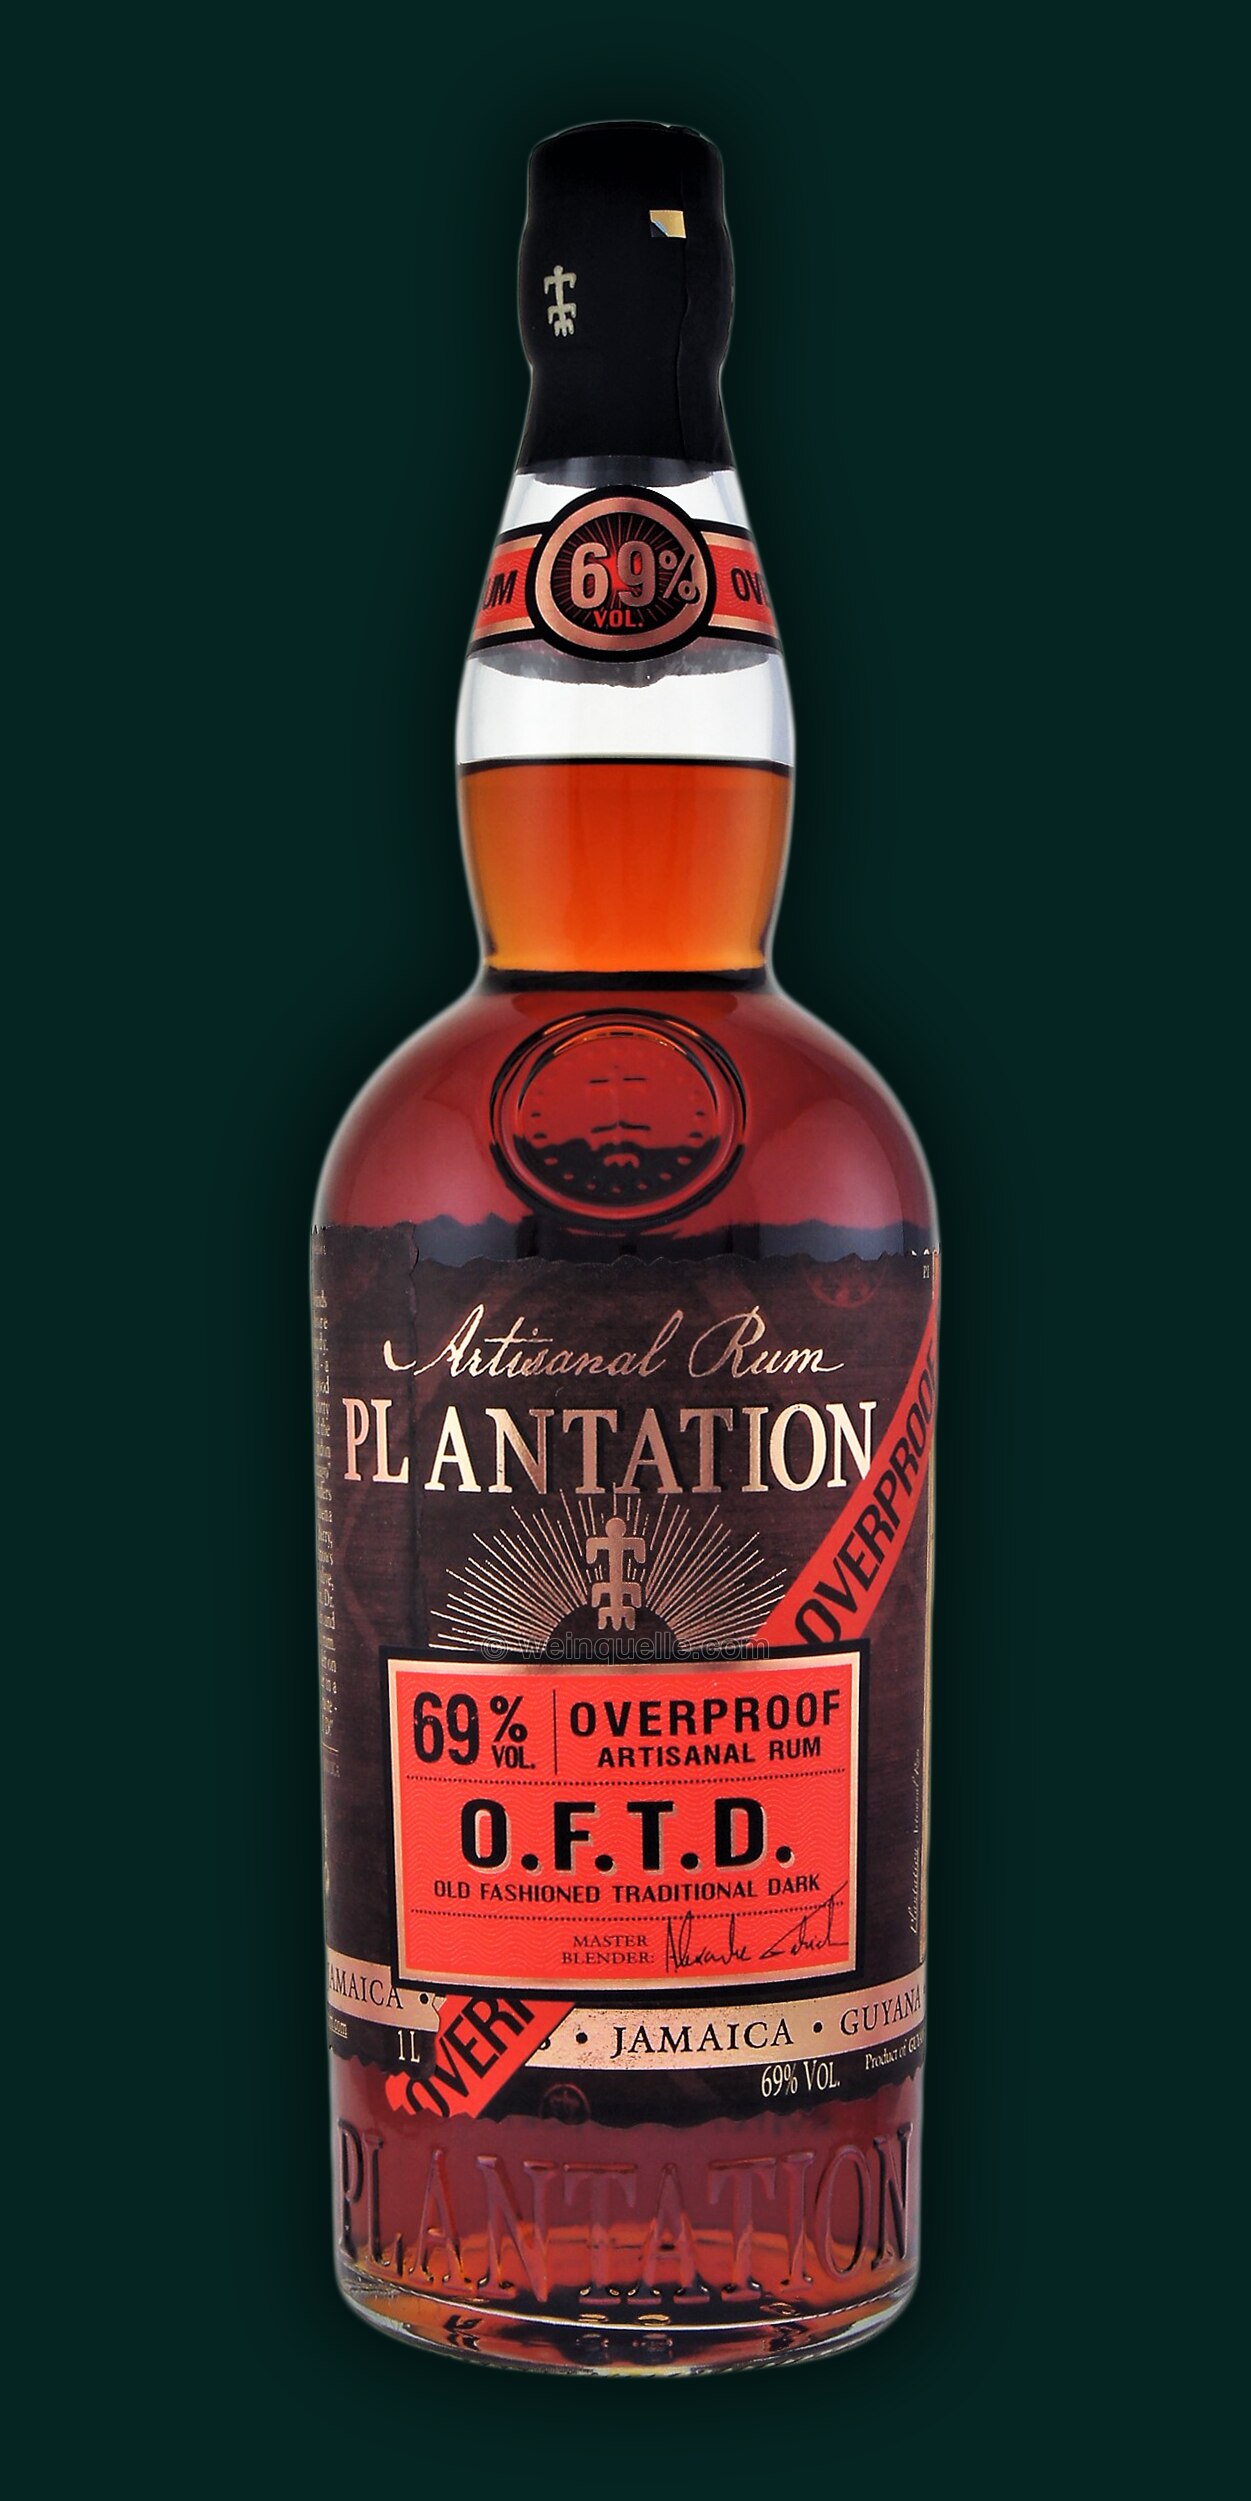 Plantation O.F.T.D. Overproof € 69% - 1,0 Lühmann Rum Liter, 34,50 Dark Weinquelle